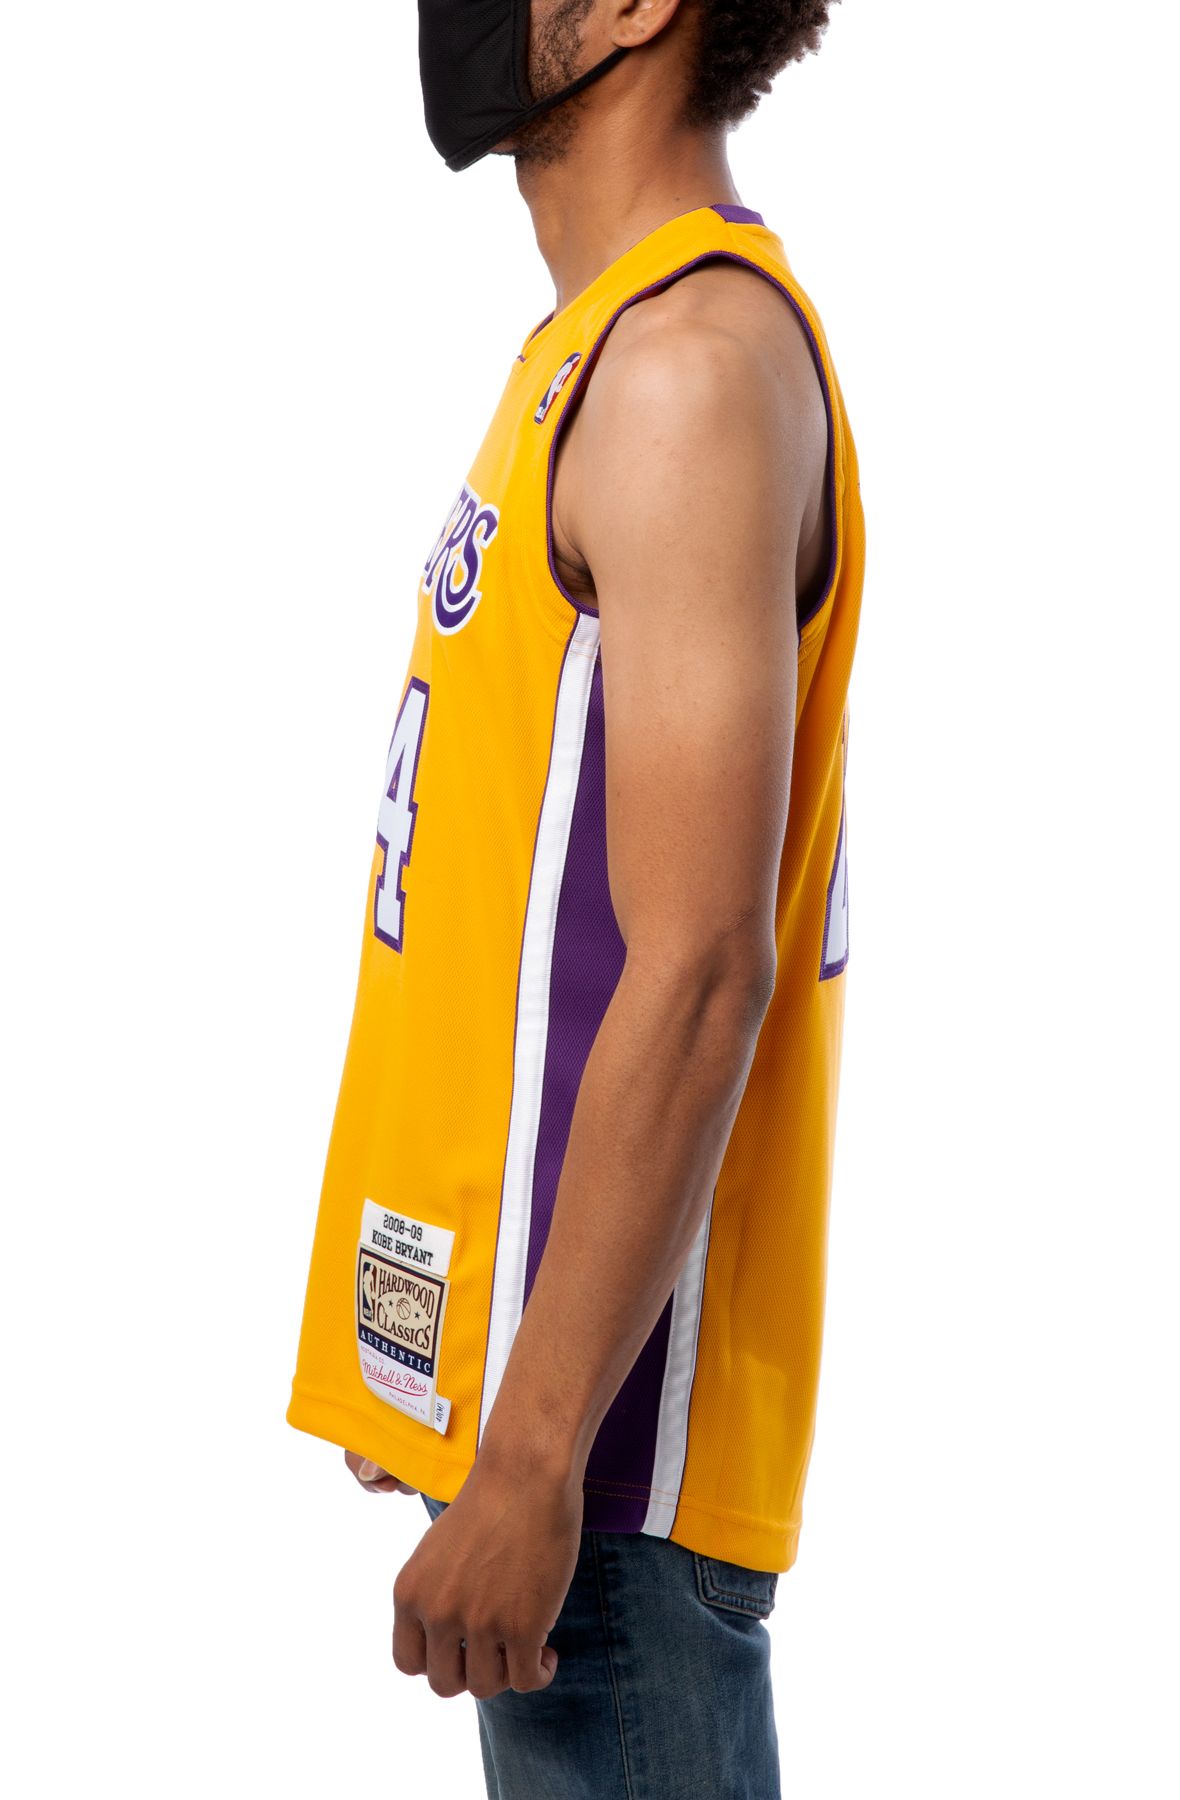 全新Adidas 球迷版拉丁之夜Los Angeles Lakers Kobe Bryant Blanc Latin Nights jersey S  size 全新未剪牌、膠袋密封多年。, 男裝, 運動服裝- Carousell